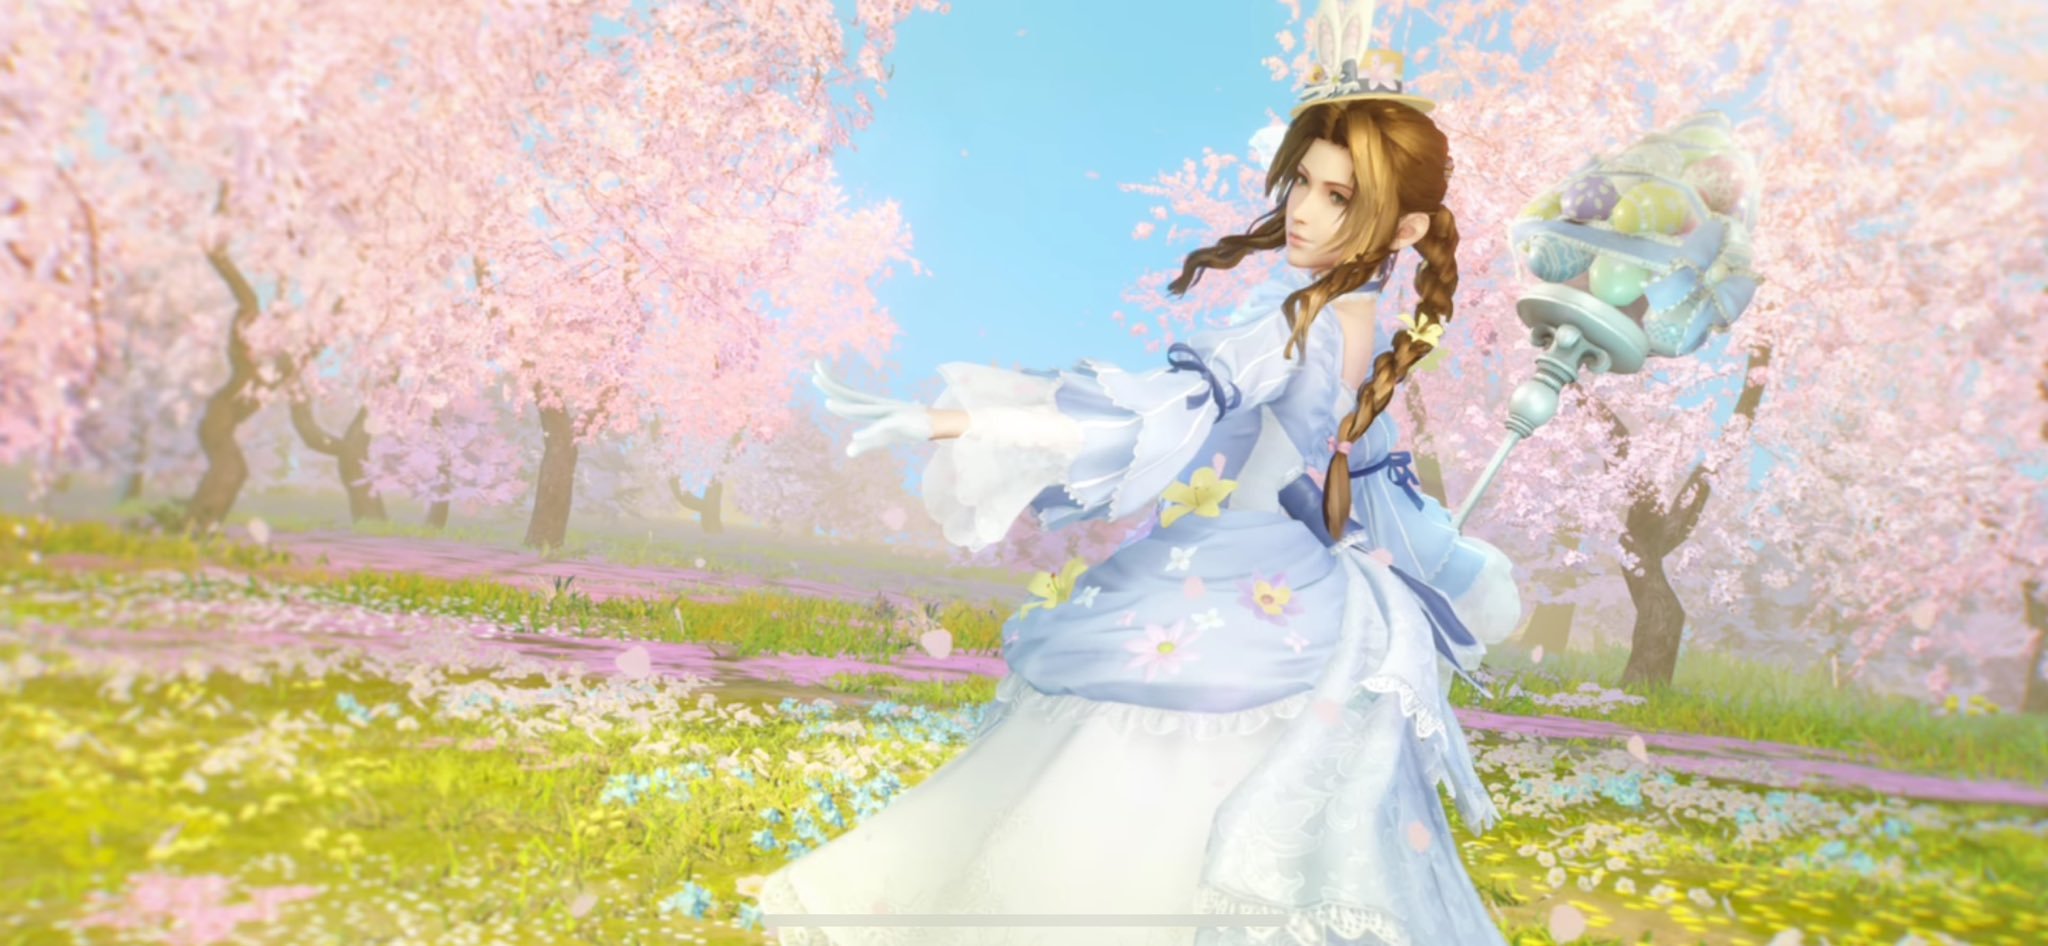 藍白禮服十分誘人《最終幻想7EC》愛麗絲復活節服裝公布